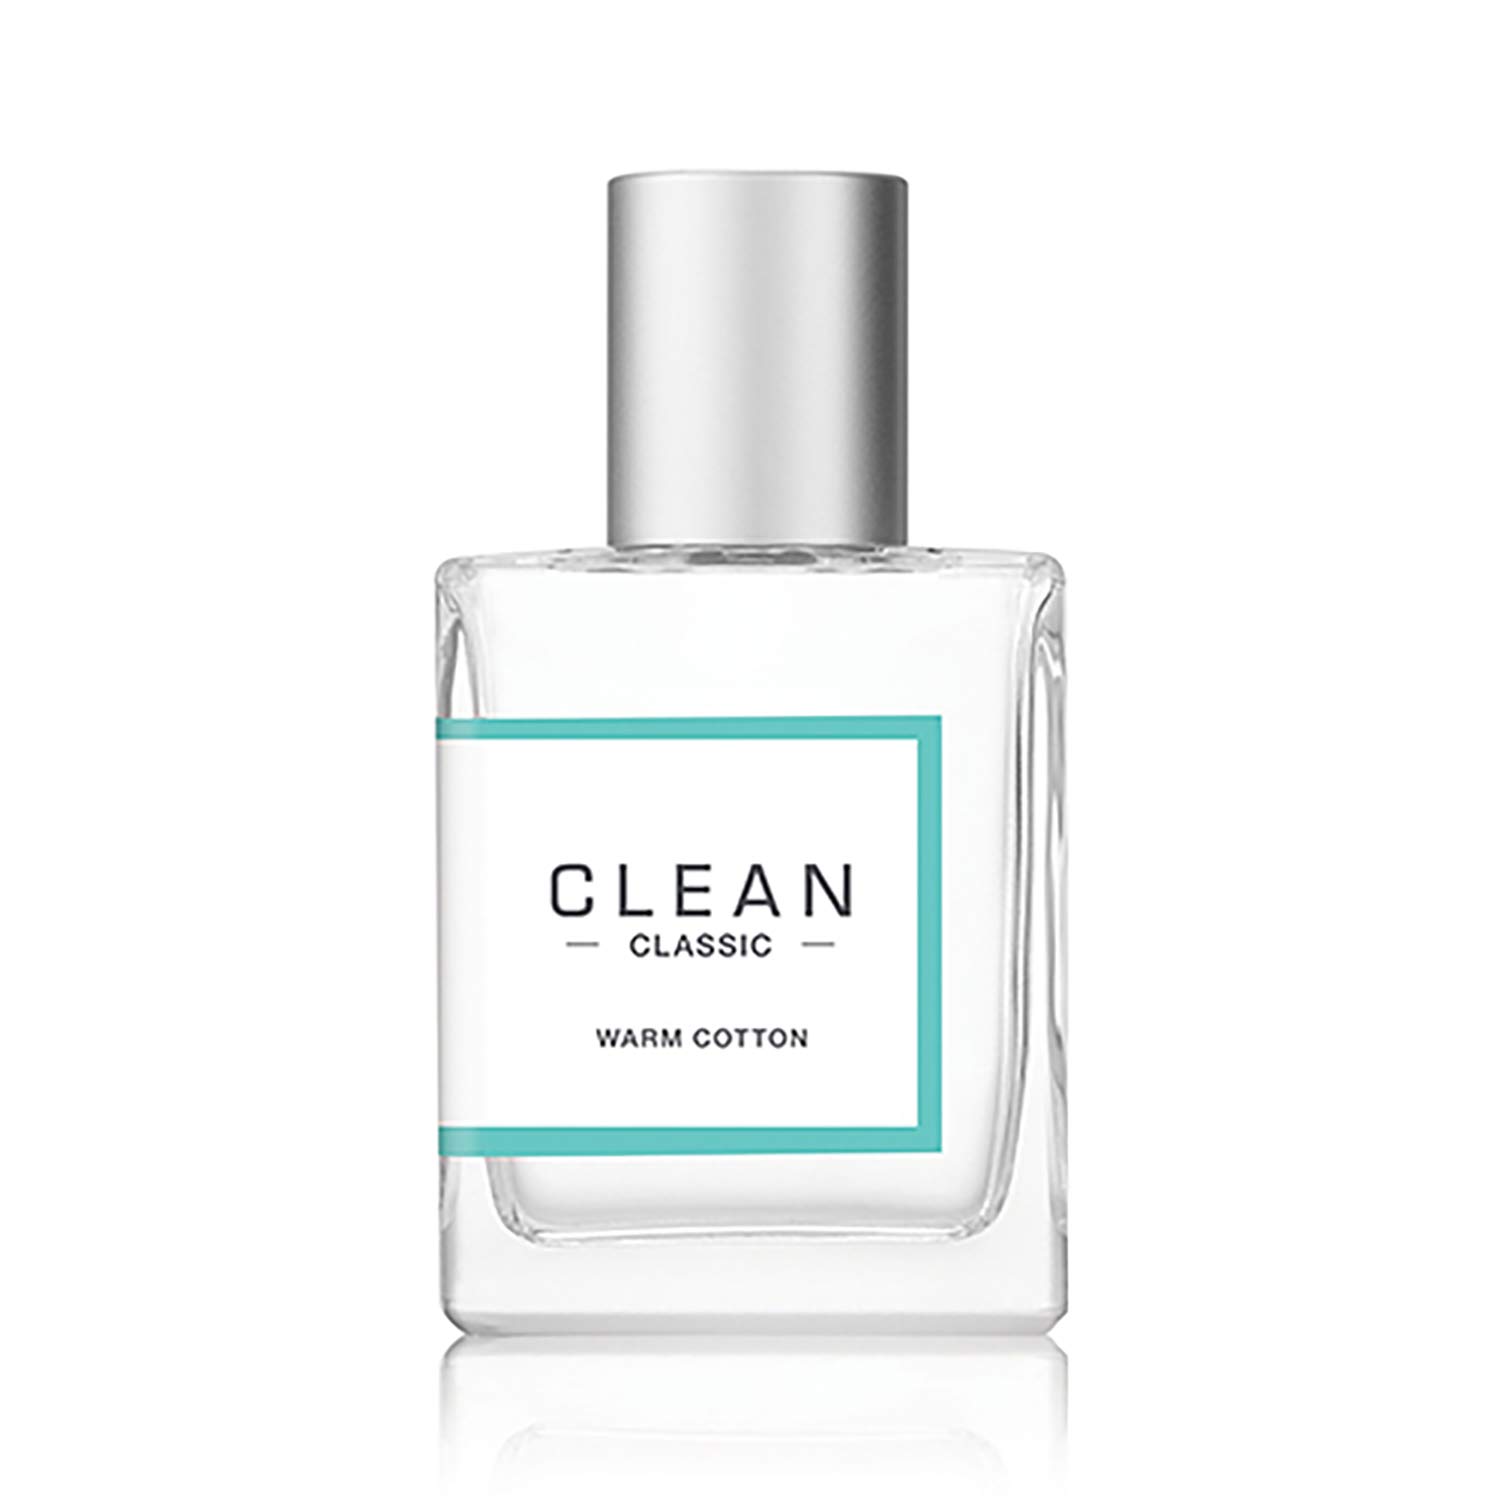 Clean warm cotton perfume